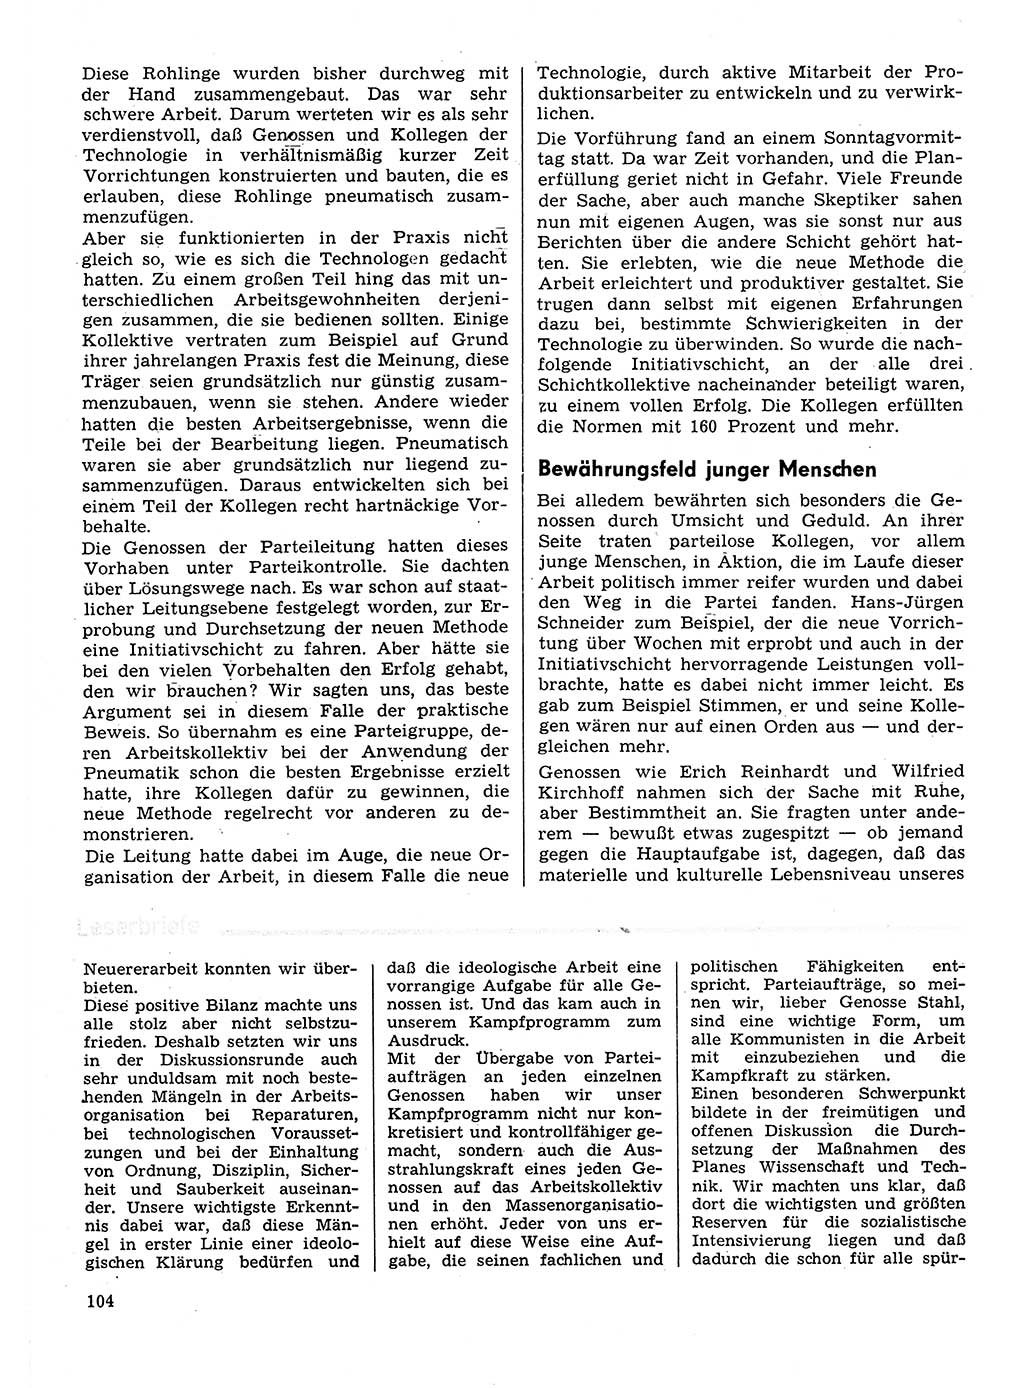 Neuer Weg (NW), Organ des Zentralkomitees (ZK) der SED (Sozialistische Einheitspartei Deutschlands) für Fragen des Parteilebens, 31. Jahrgang [Deutsche Demokratische Republik (DDR)] 1976, Seite 104 (NW ZK SED DDR 1976, S. 104)